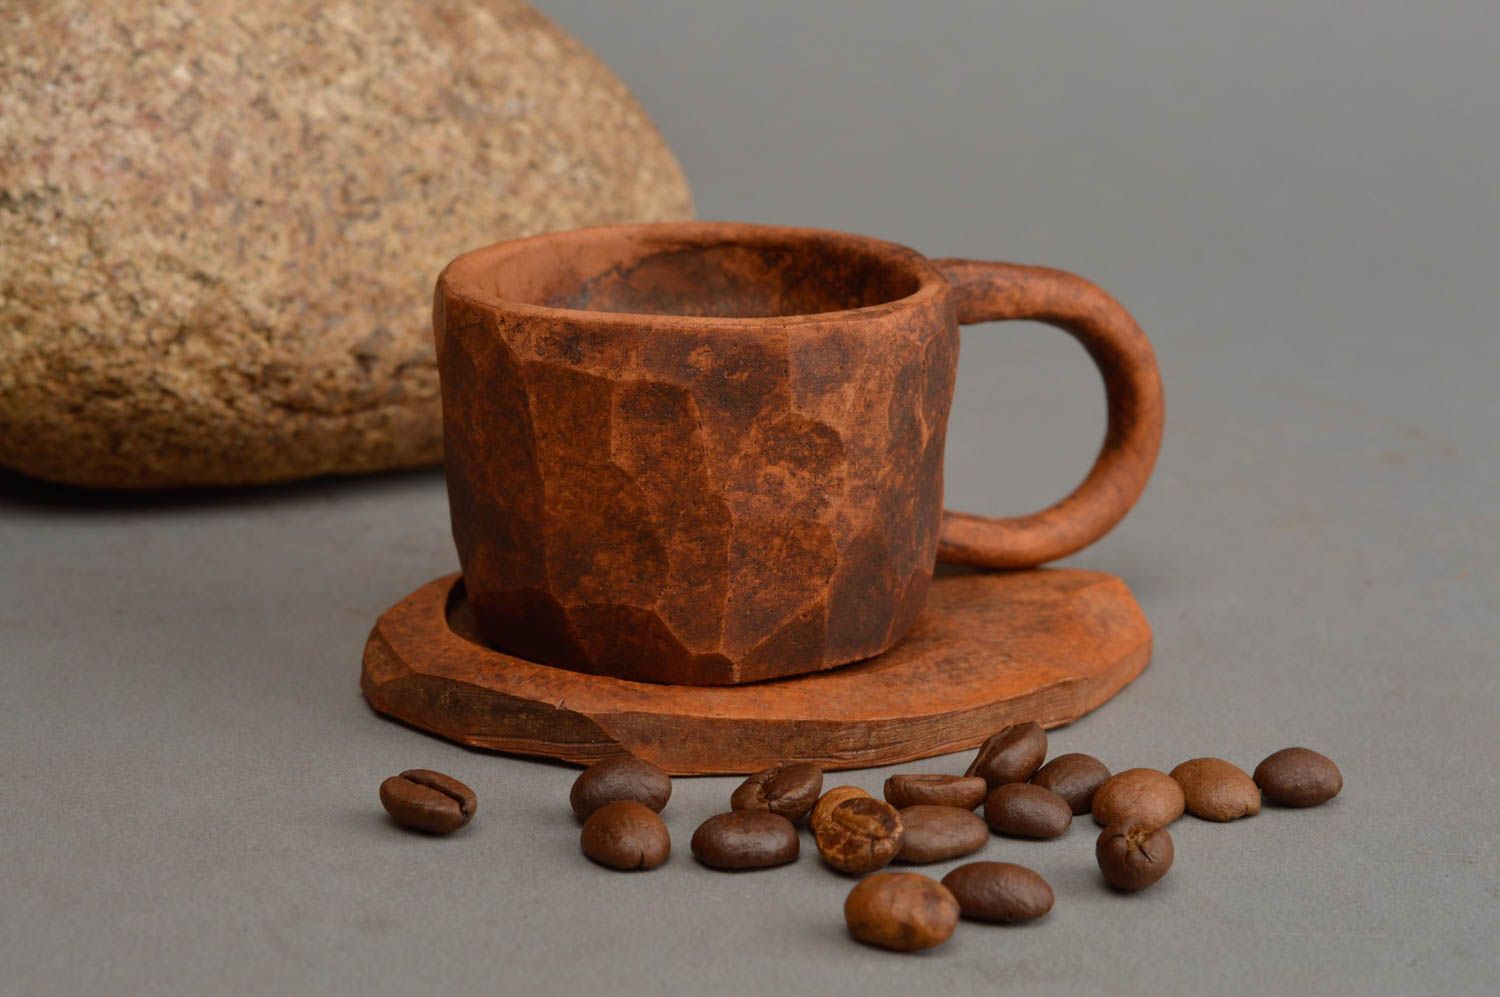 Оригинальная глиняная чашка с блюдцем ручной работы в технике лепки авторская  фото 1